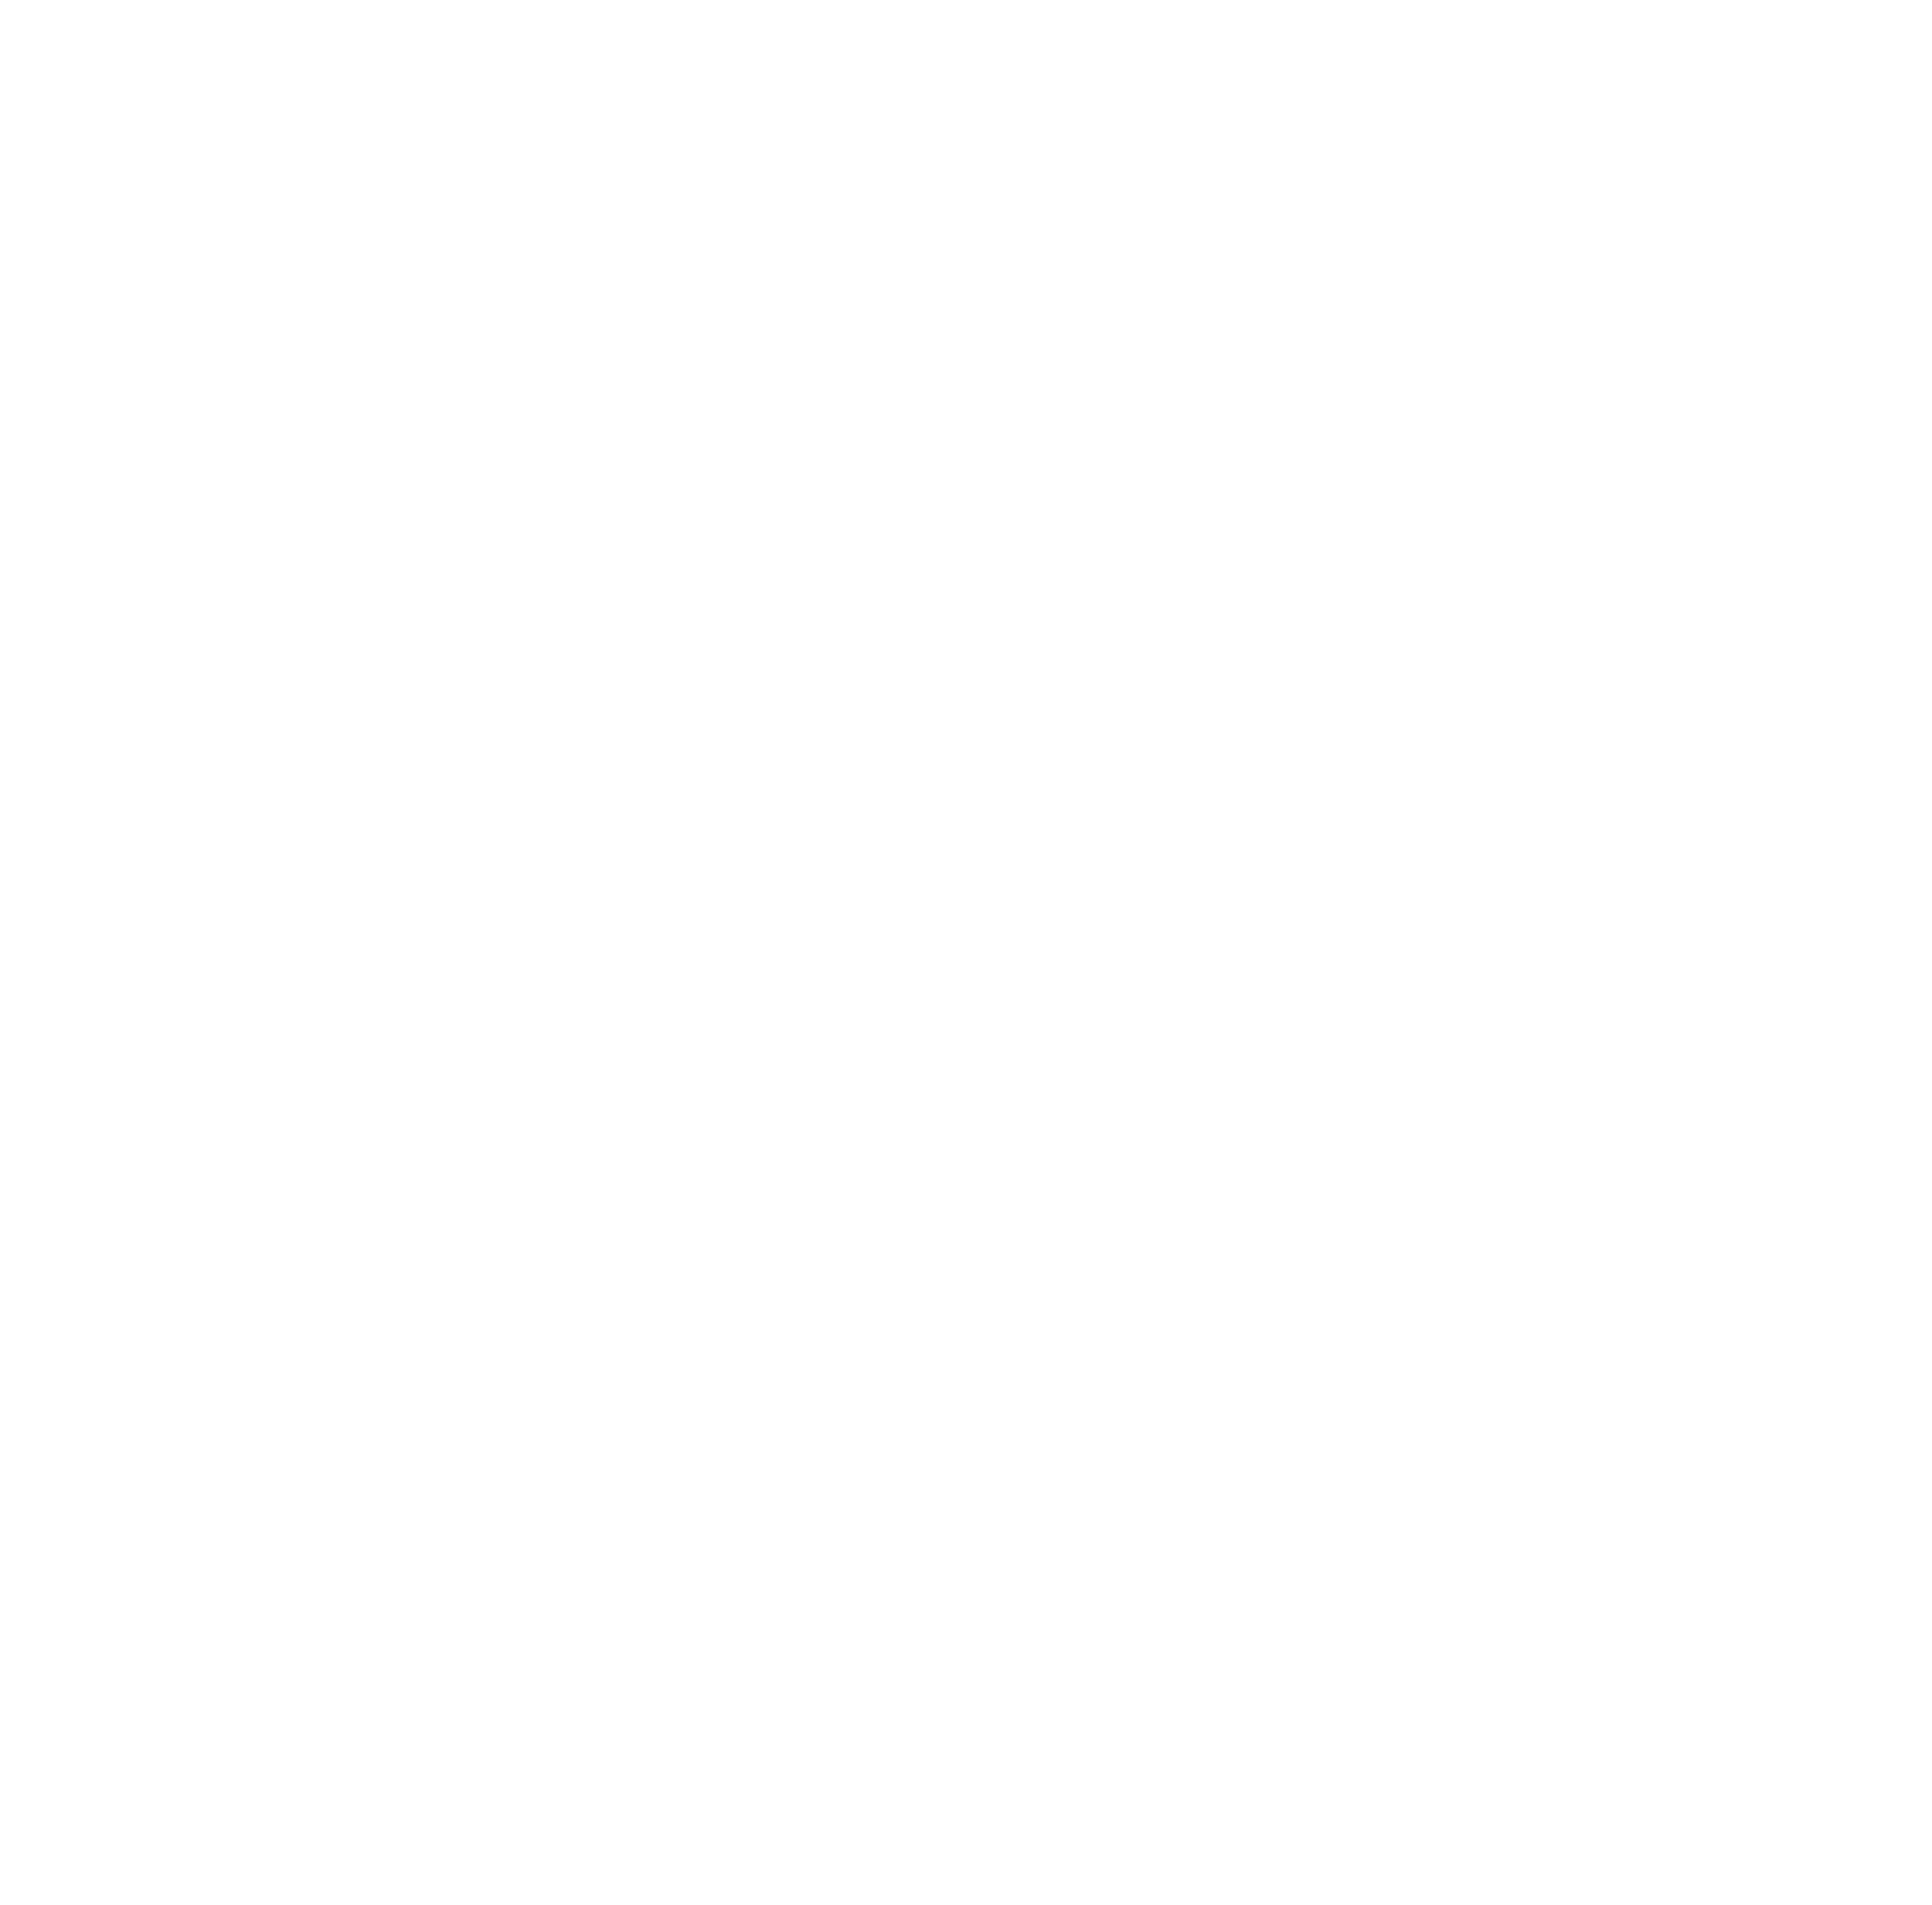 SOTI Next Gen India